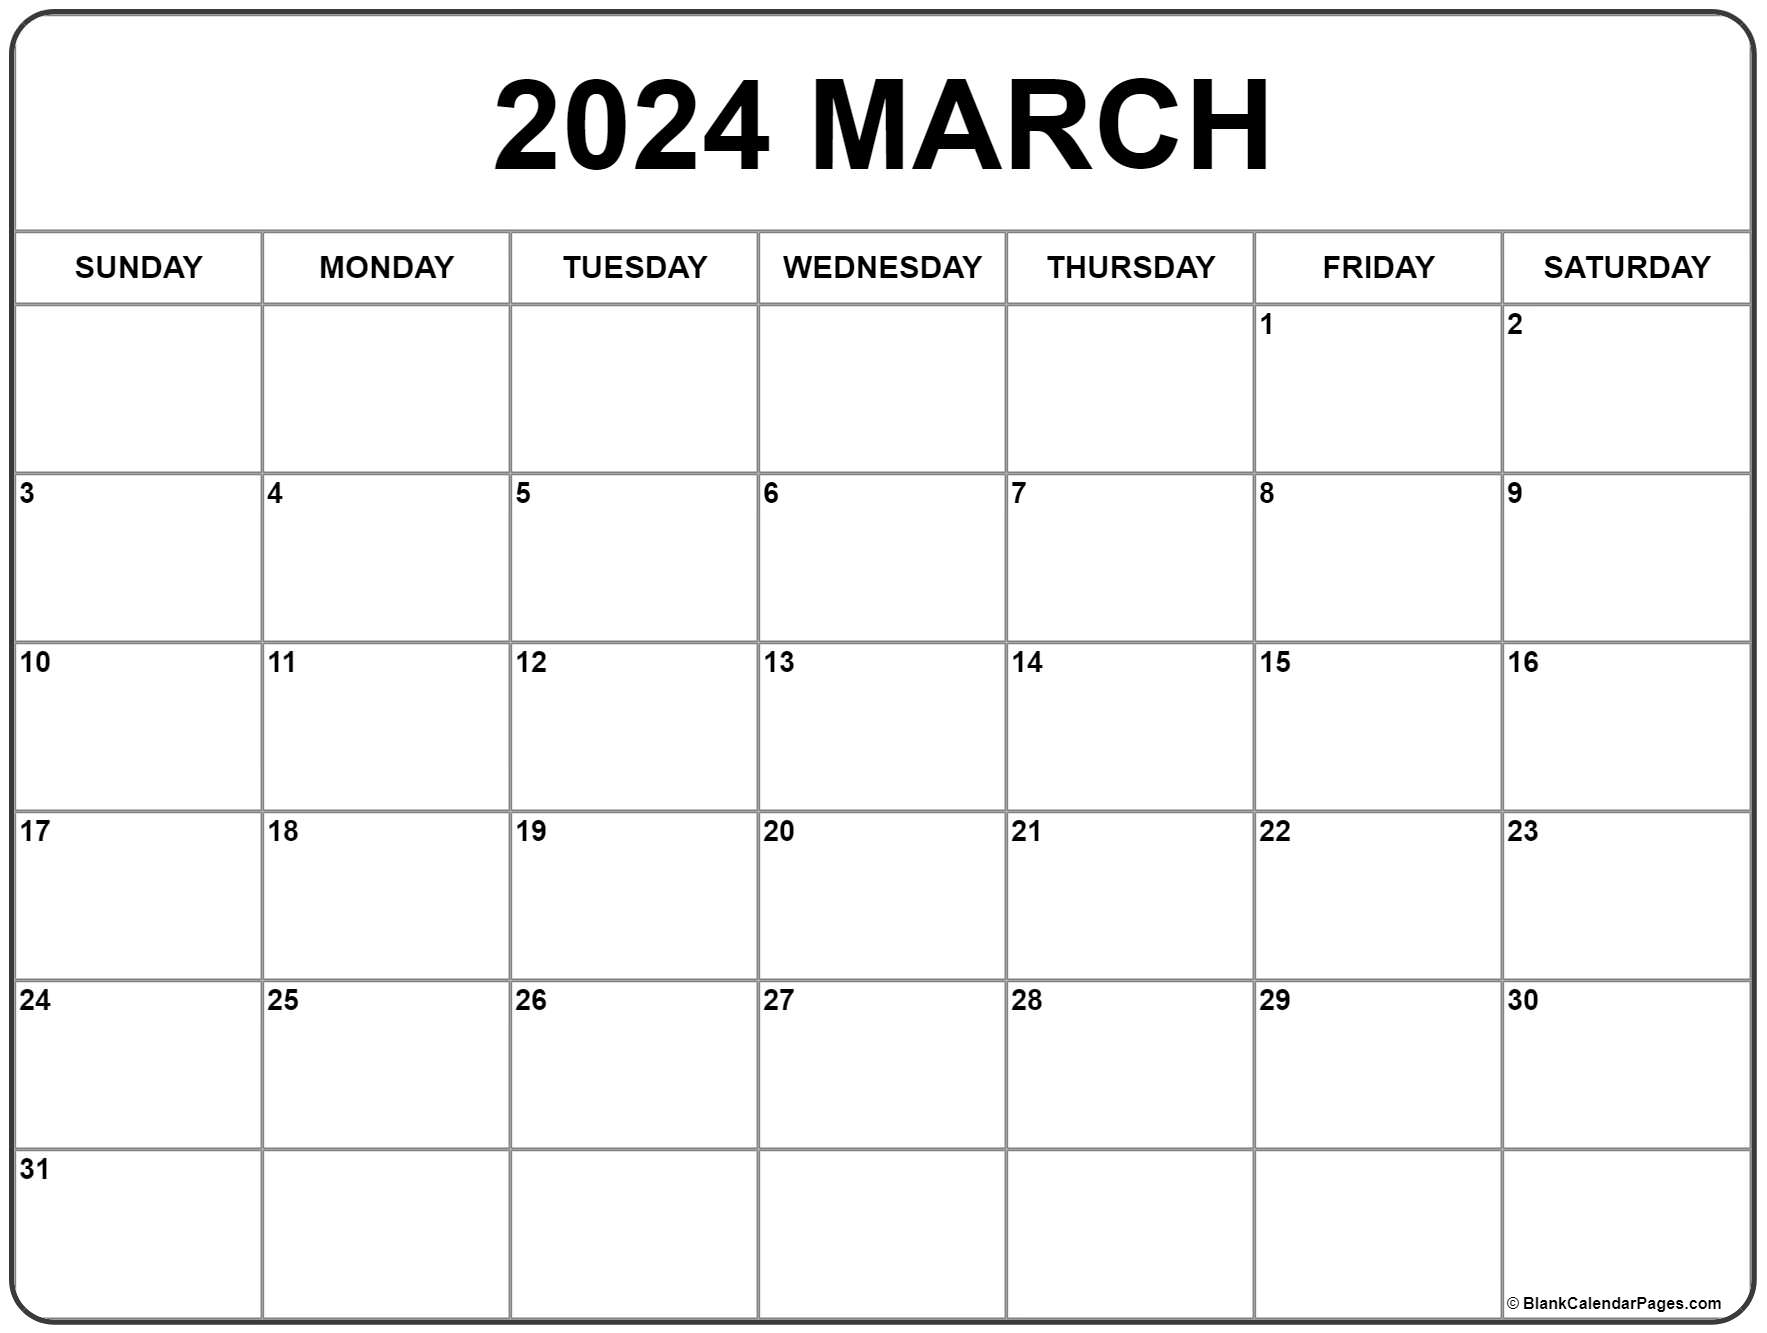 March 2022 Calendar Blank March 2022 Calendar | Free Printable Calendar Templates